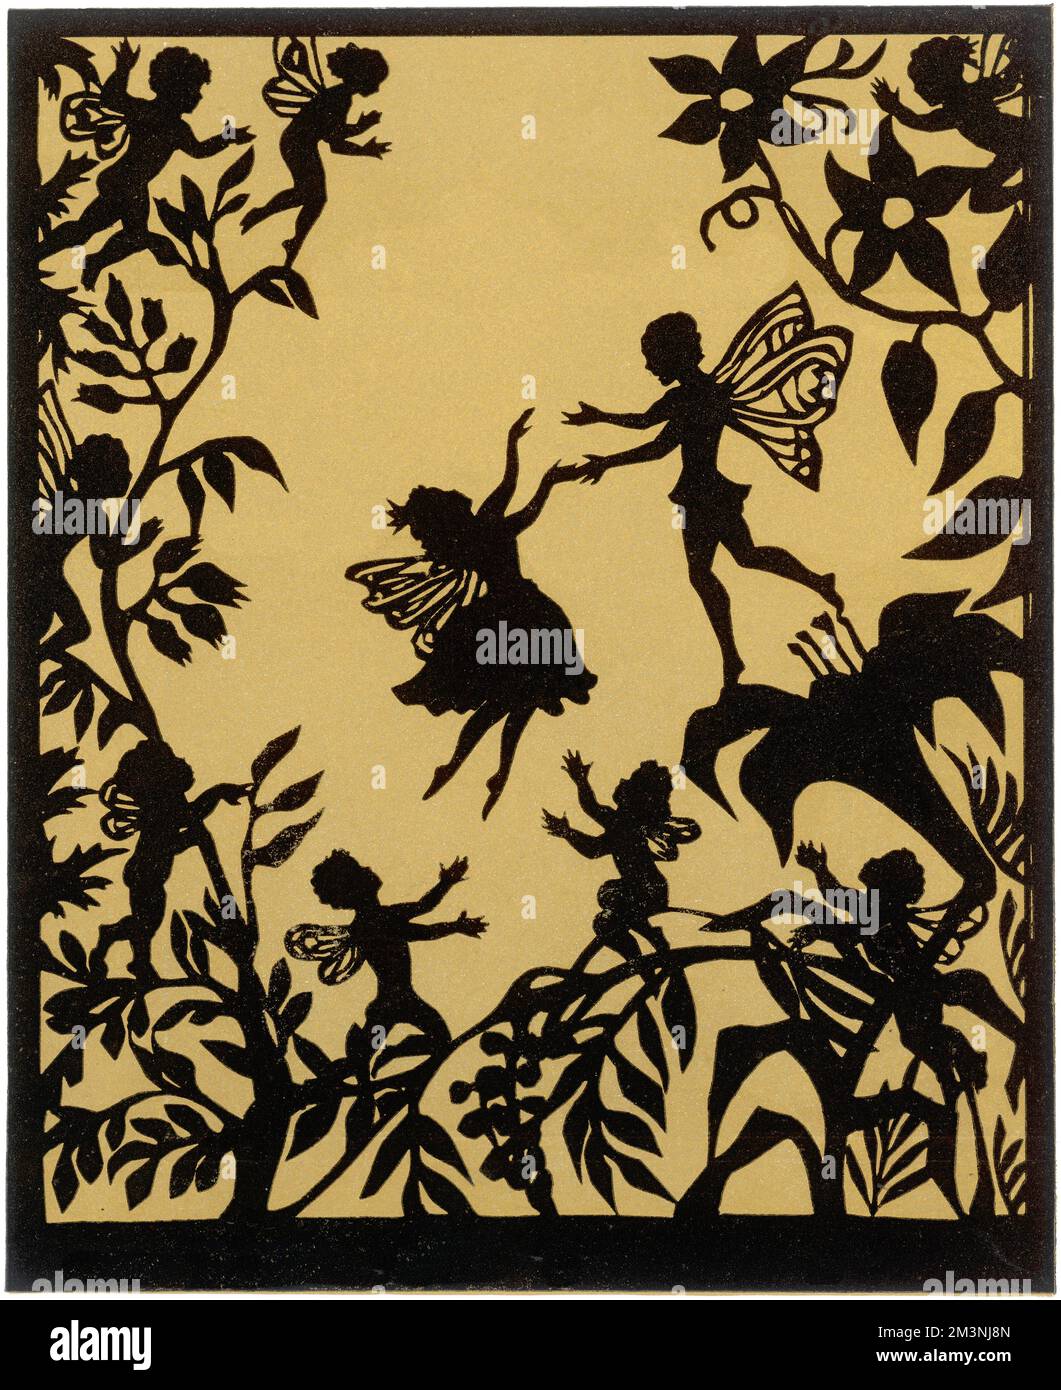 Thumbelina rencontre le prince Fairy et vole avec lui, et ils vivent heureux toujours après. Illustration d'un conte de fées par Hans Christian Andersen, première publication en 1835. Date: 1959 Banque D'Images